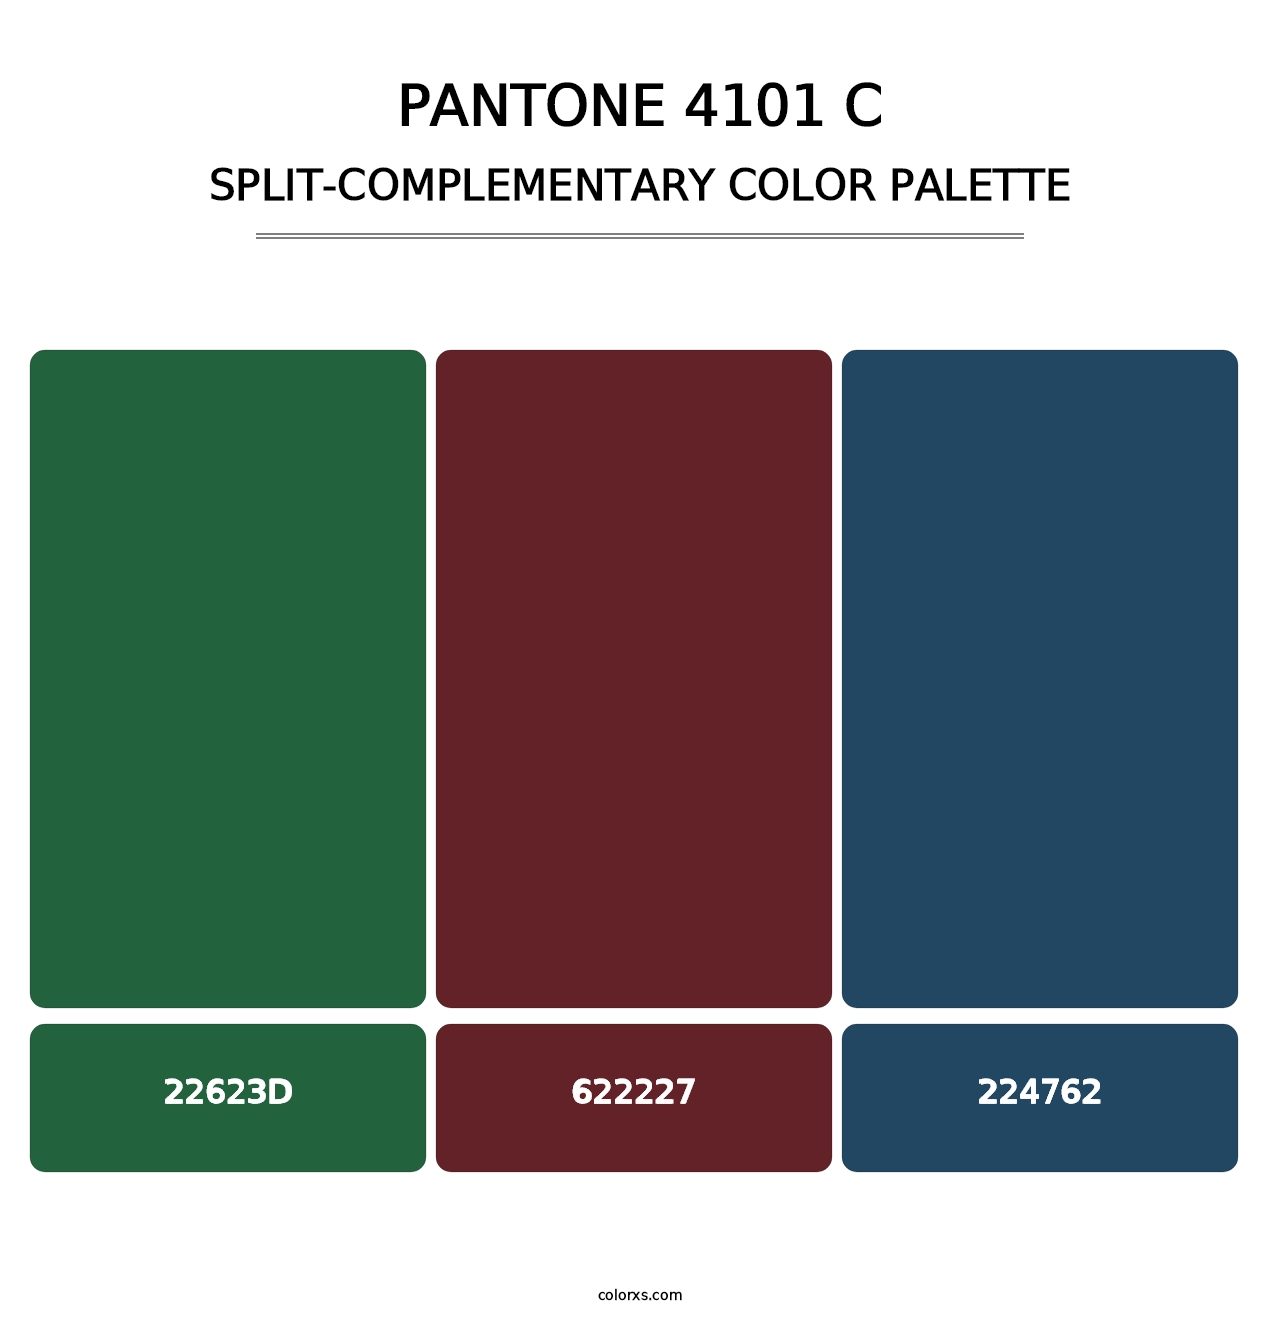 PANTONE 4101 C - Split-Complementary Color Palette